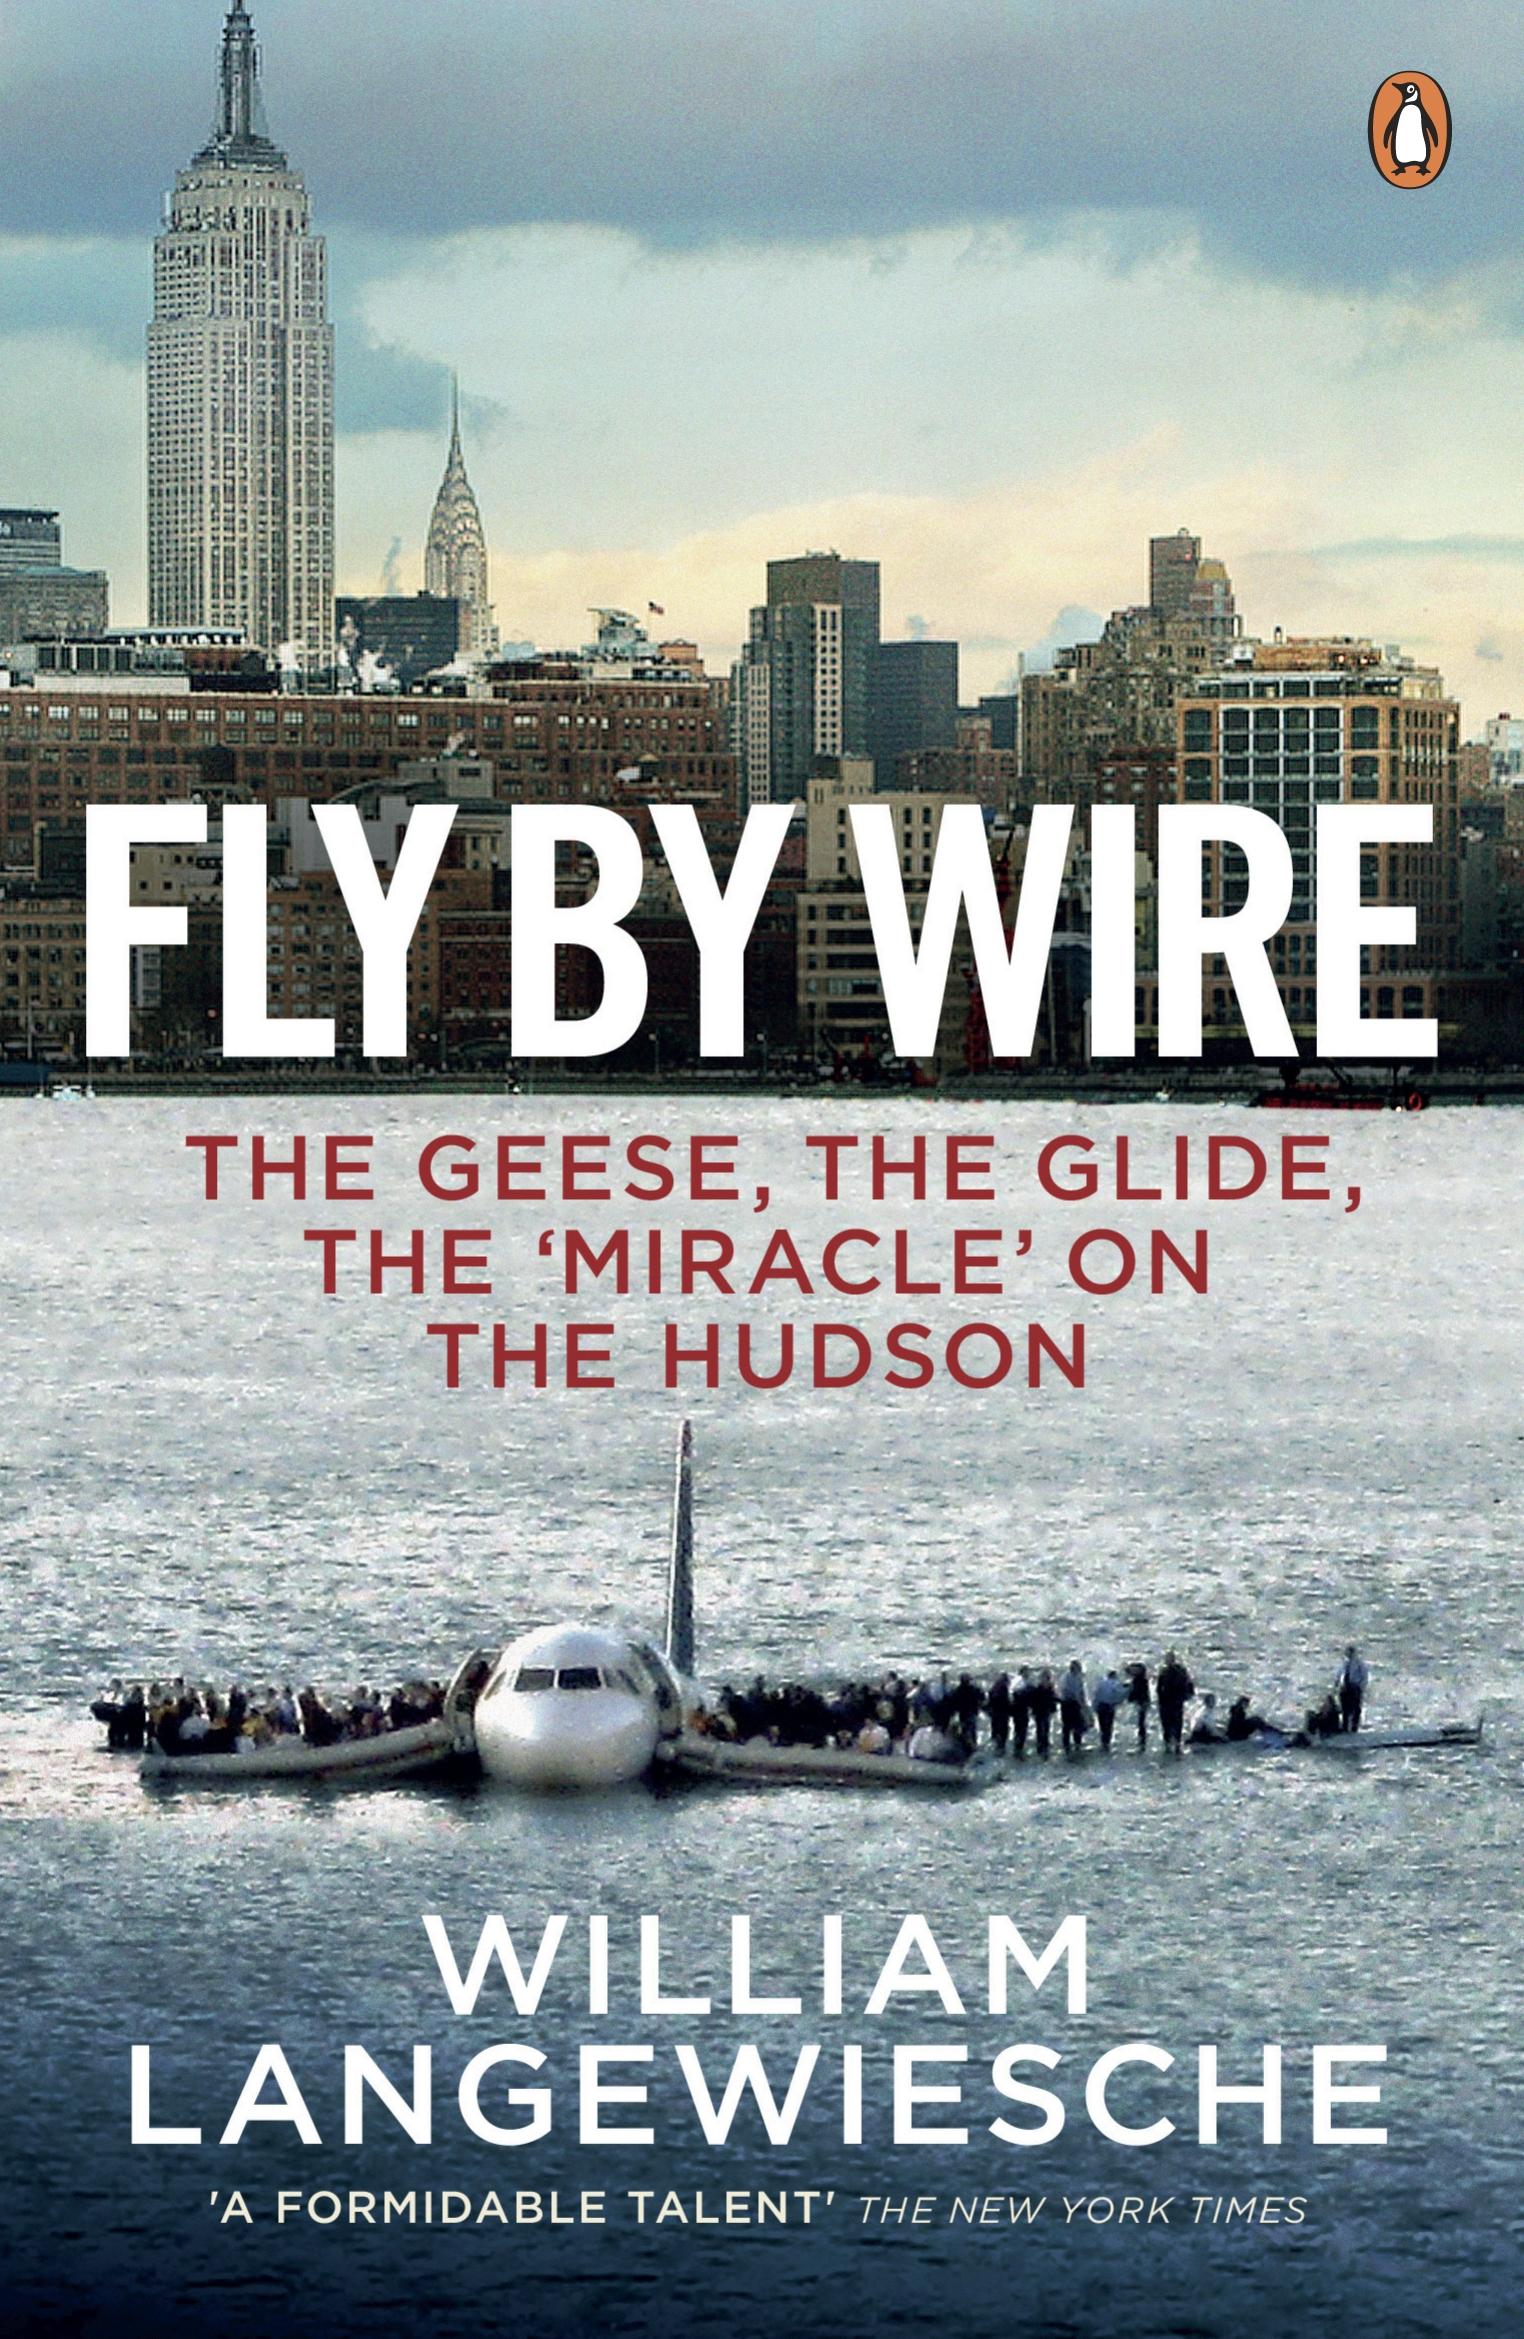 Langewiesche, W: Fly By Wire / The Geese, The Glide, The 'Miracle' on the Hudson / William Langewiesche / Taschenbuch / Kartoniert / Broschiert / Englisch / 2010 / Penguin Books Ltd - Langewiesche, William